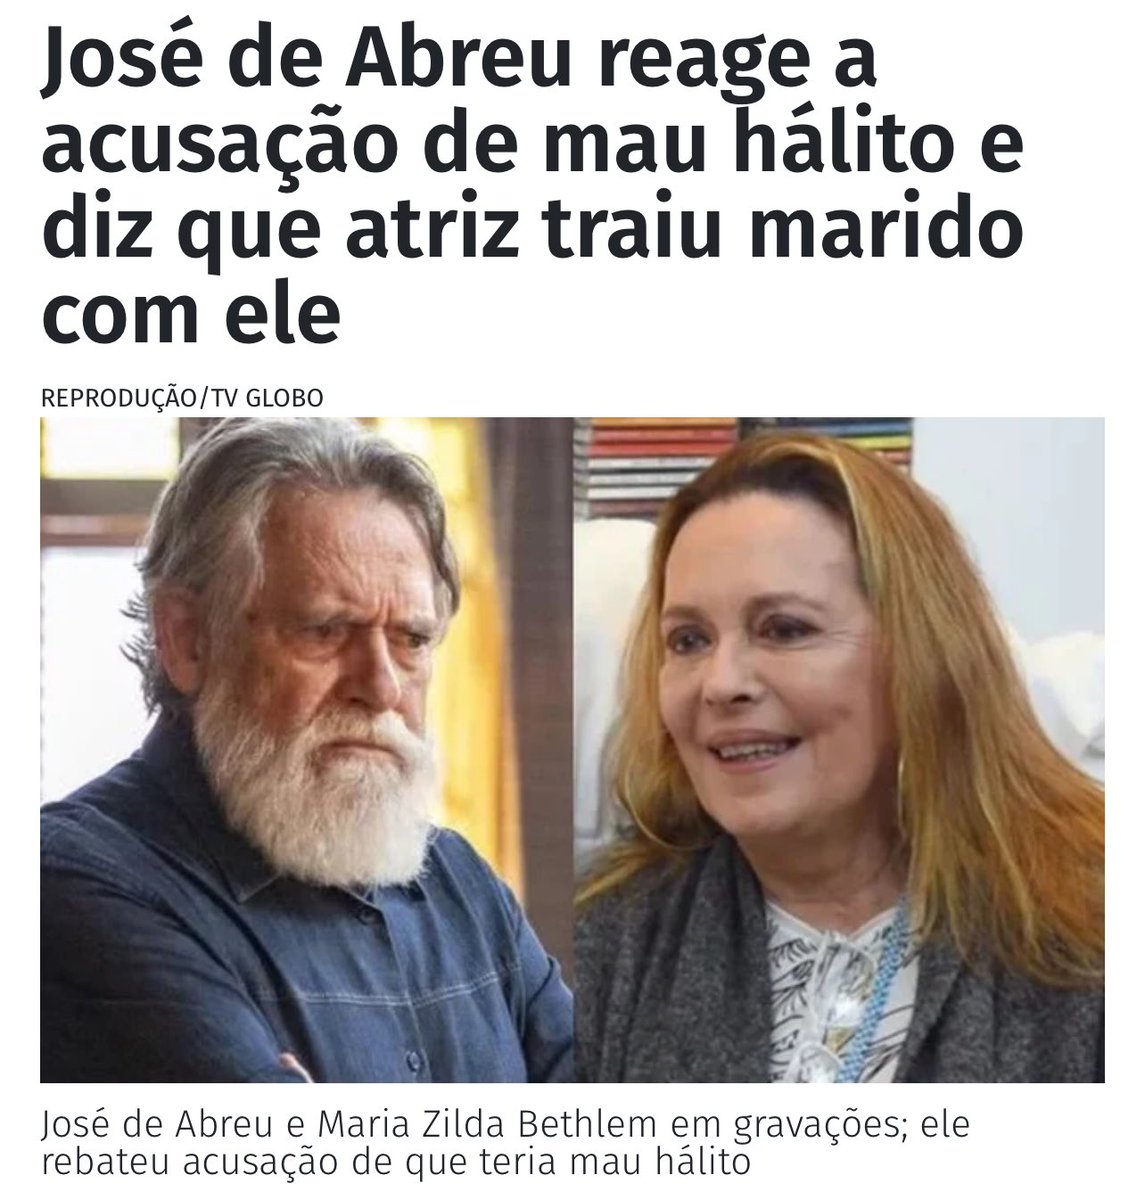 O Zé do Bafo, AKA @zehdeabreu, sentiu tanto, que resolveu atacar a honra da denunciante. Antigamente, as feministas iriam dizer que isso é um ataque misógino. Mas como o aposentado é aliado do Lula, vai ficar por isso mesmo.